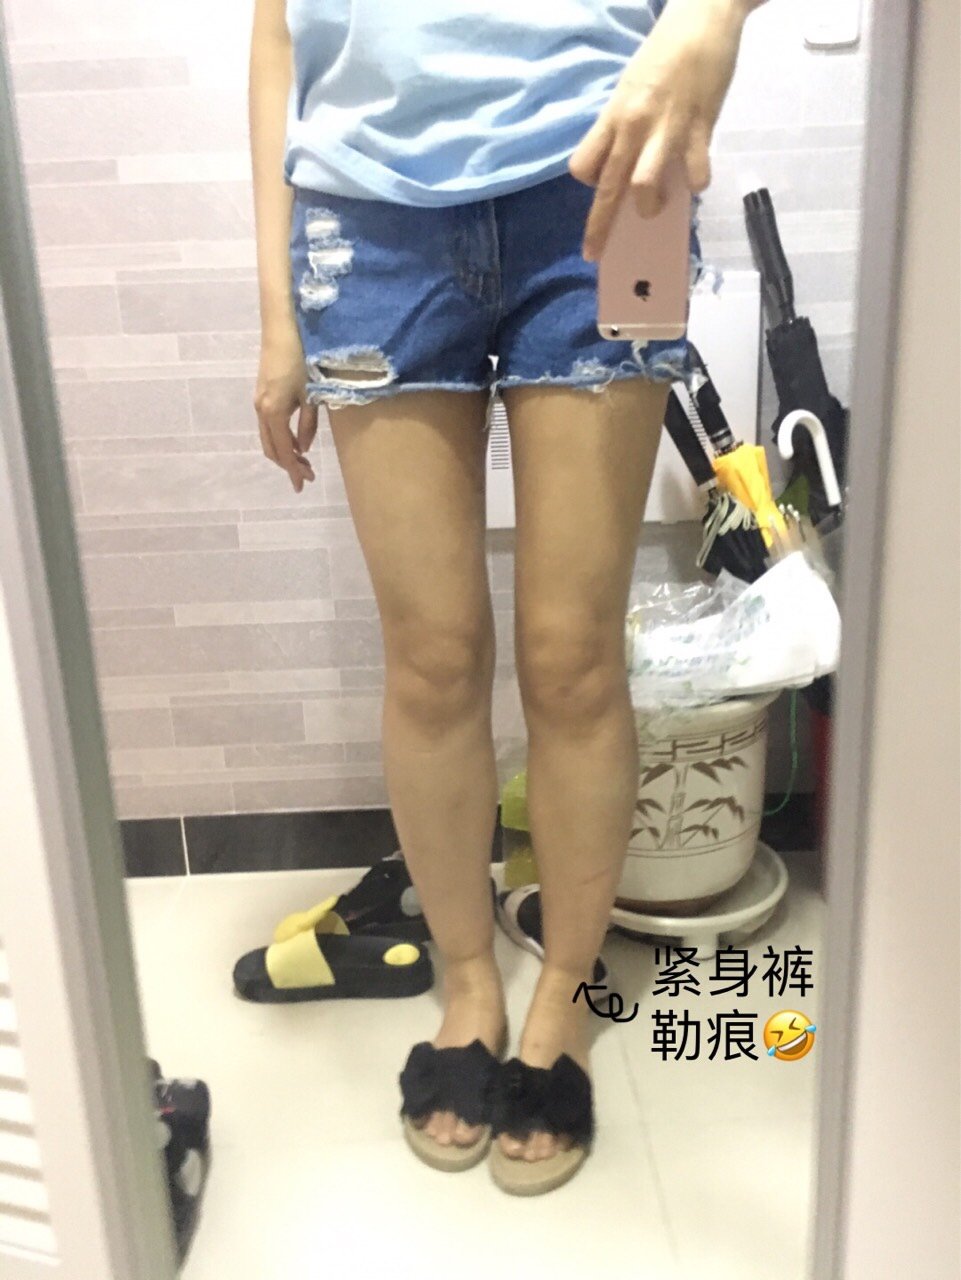 【吸脂】大腿 ,【大腿环吸】无死角/大容量/术后紧致不凹凸/韩国客人